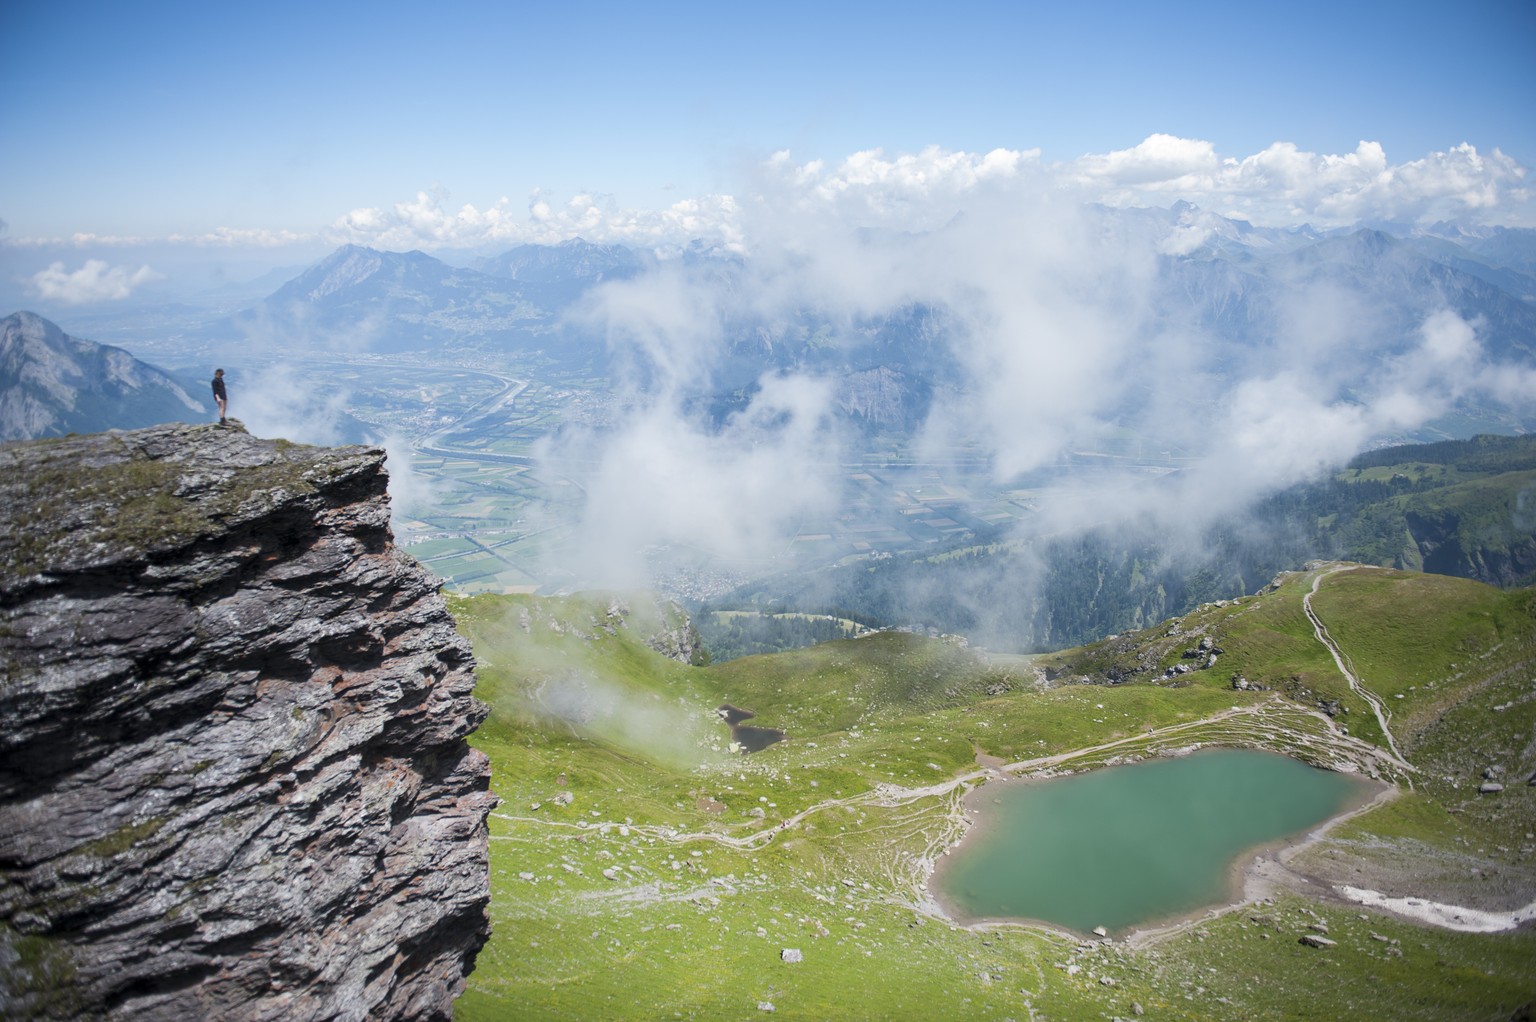 Aussichten wie diese, hier vom Wangs-Pizol auf das St.Galler und Churer Rheintal, locken jedes Jahr Tausende in die Schweizer Berge.